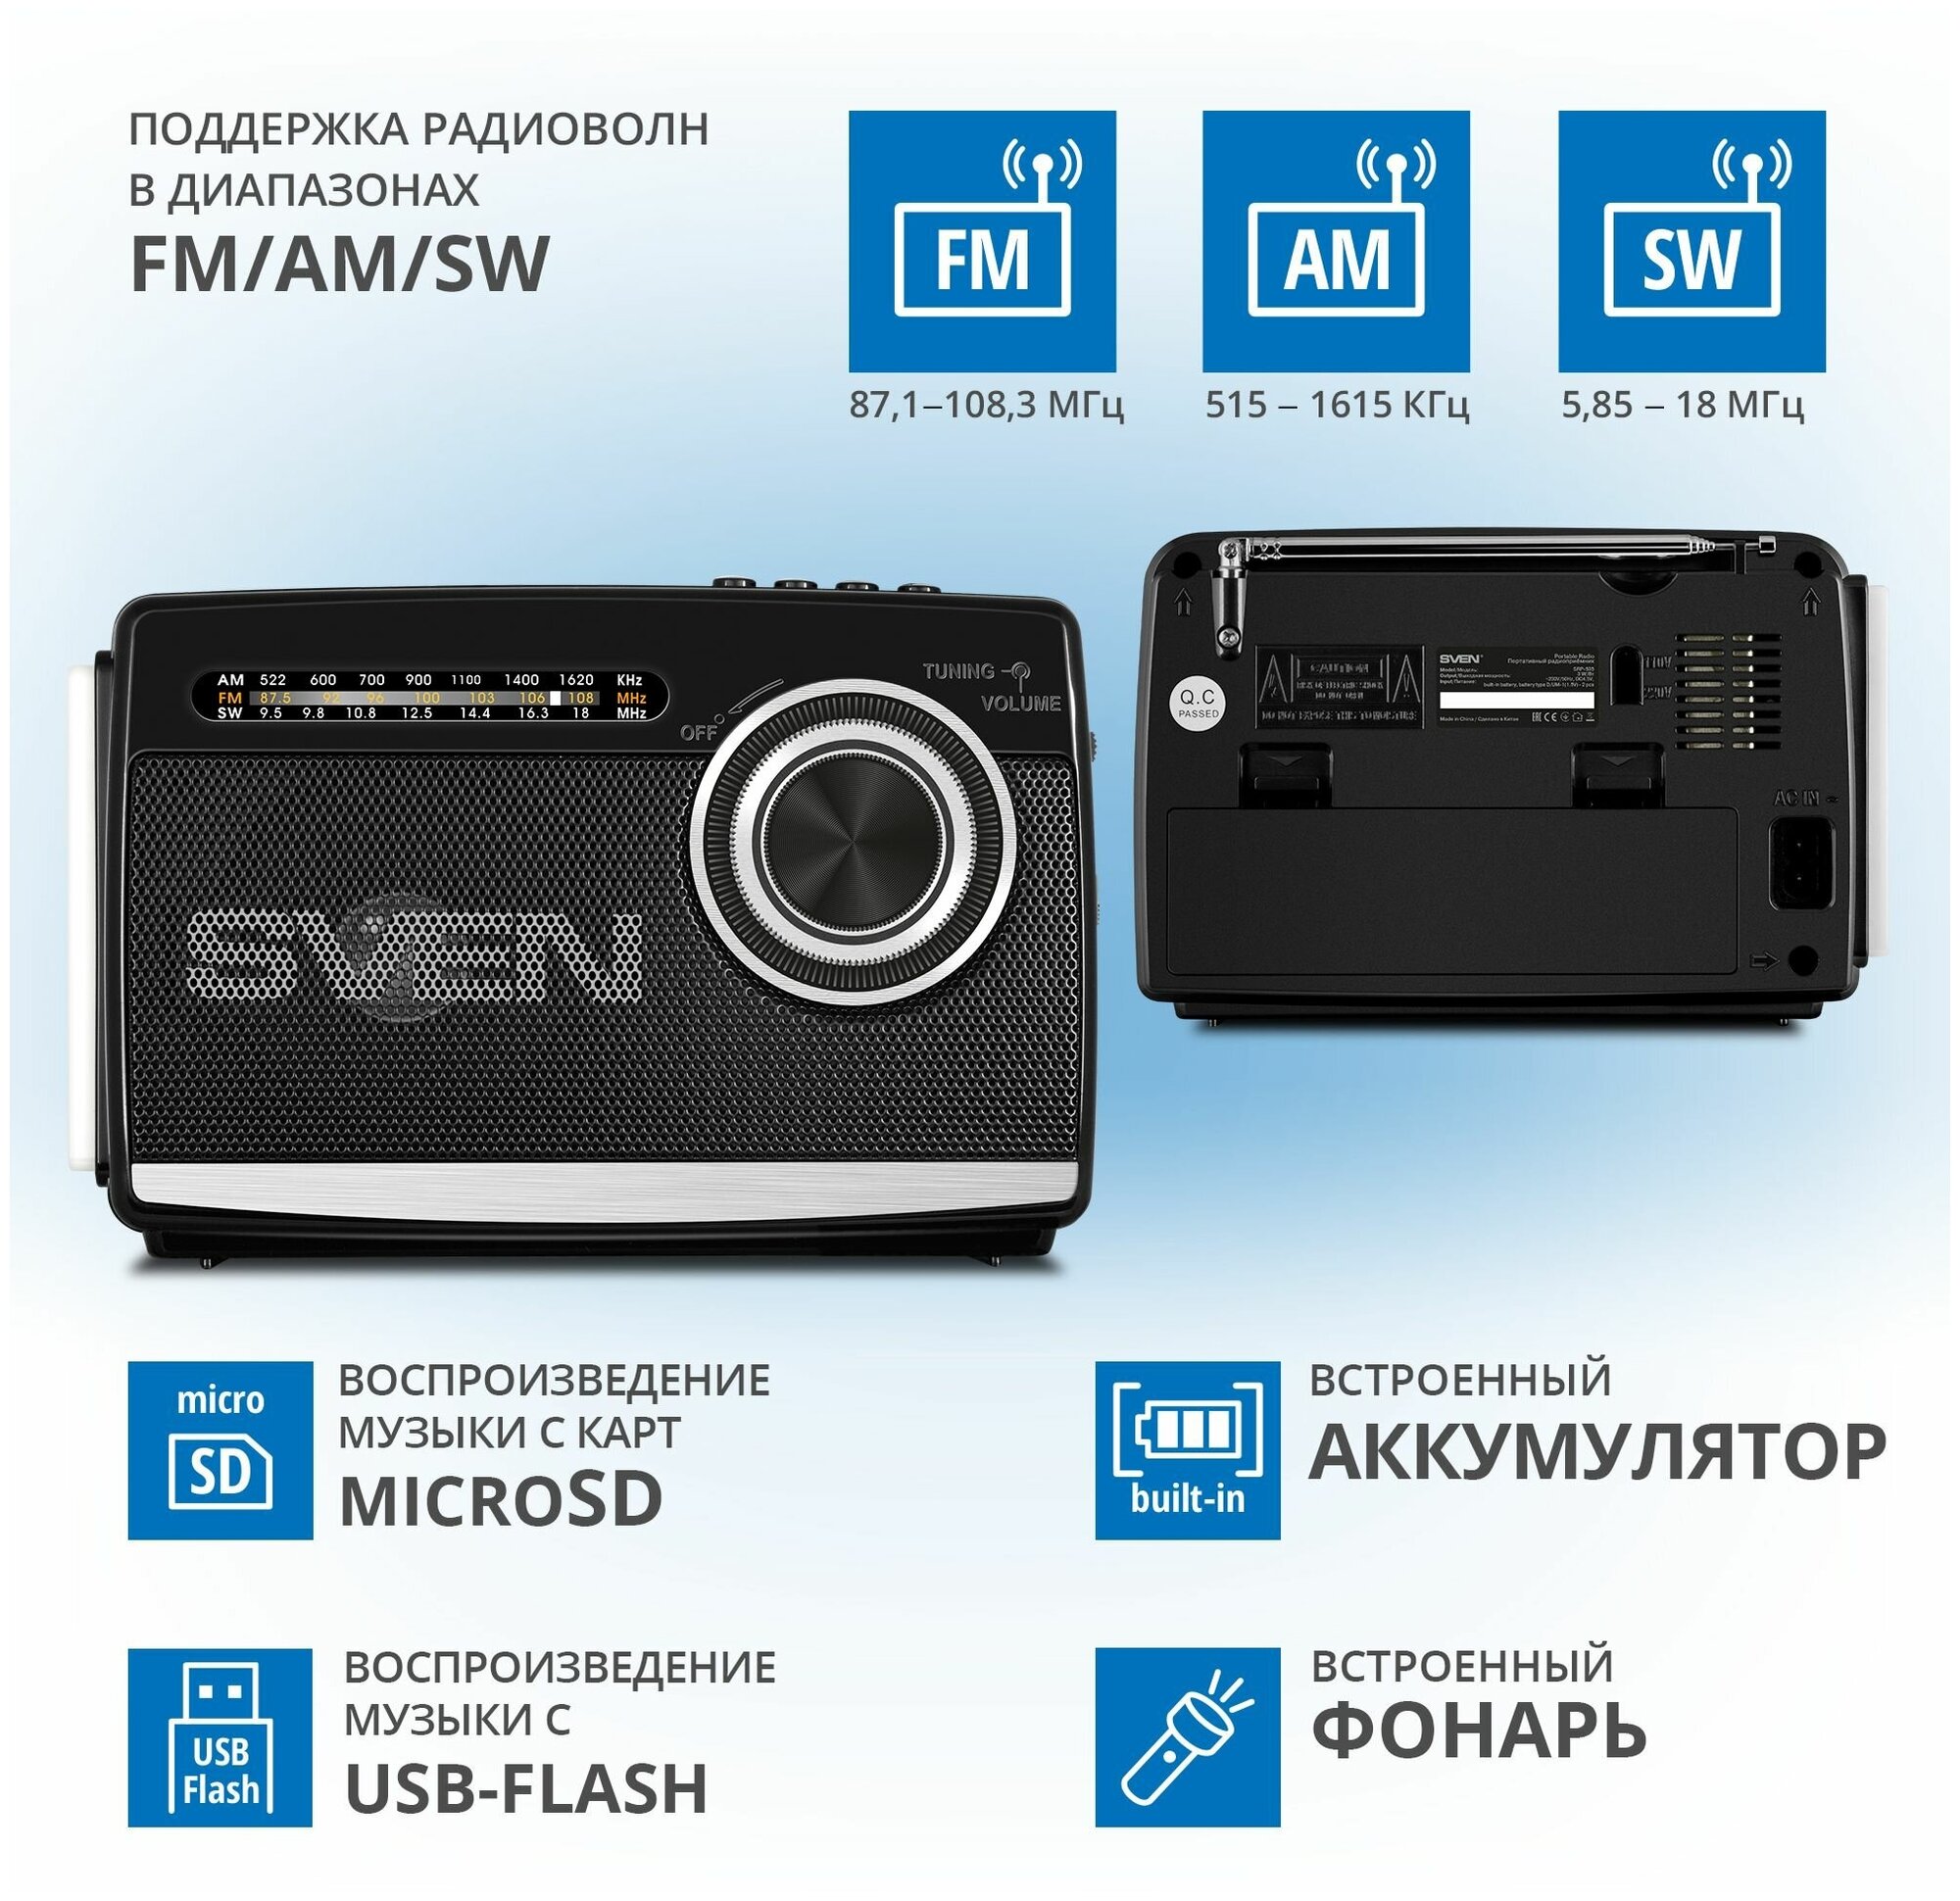 Радиоприемник SVEN SRP-535, черный, 3 Ватт, FM/AM/SW, USB, microSD, фонарь, встроенный аккумулятор